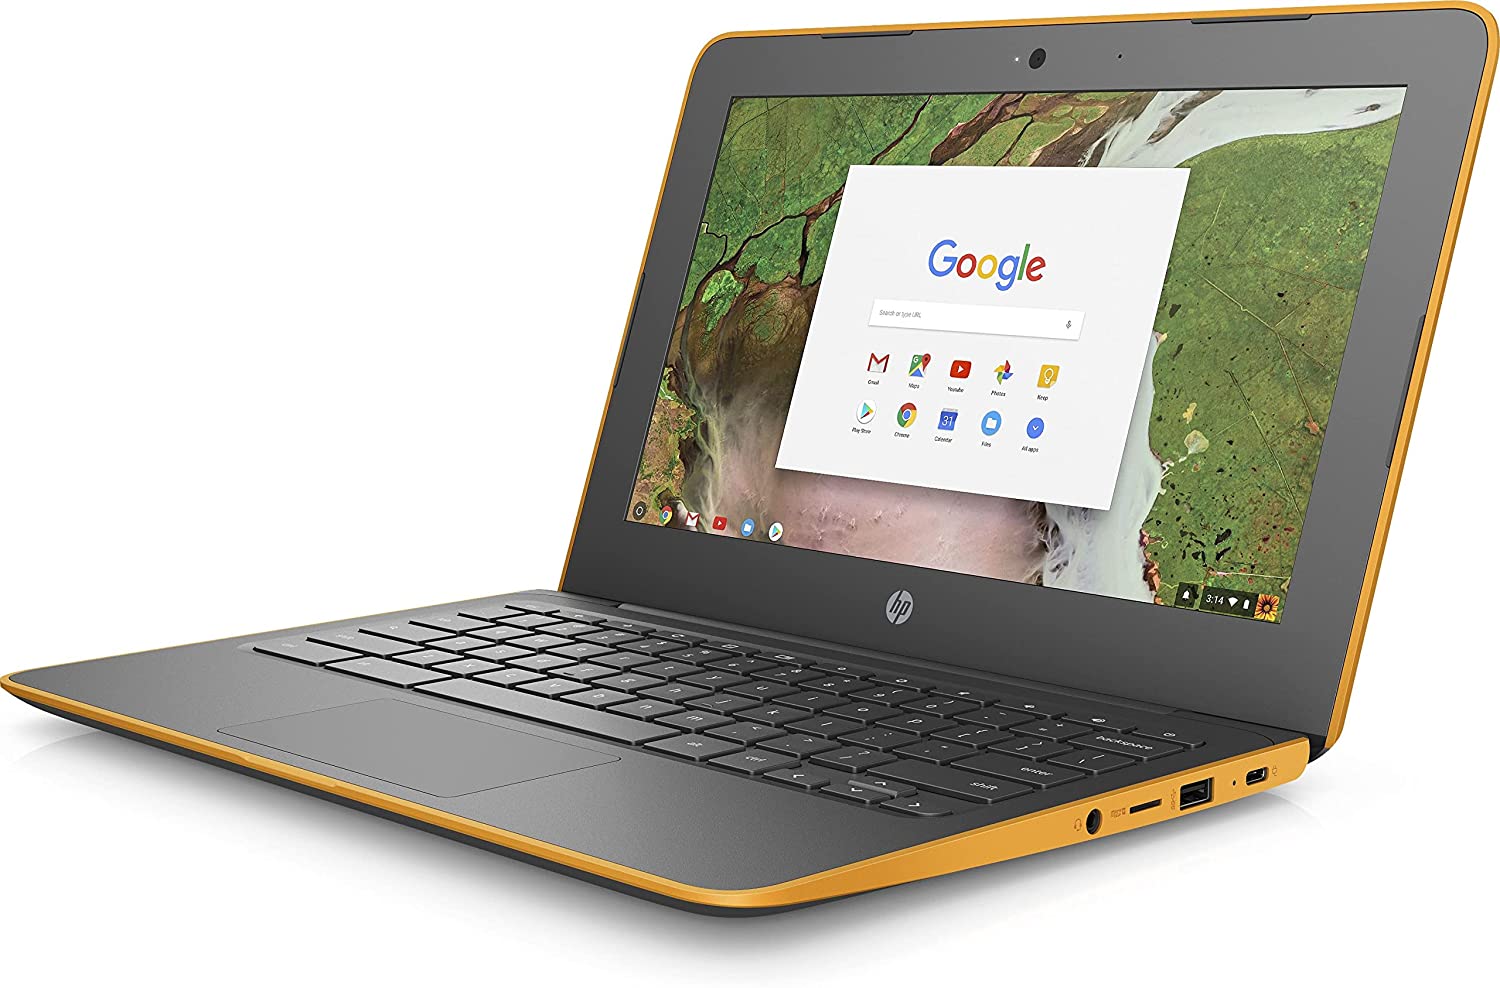 प्रयुक्त/नवीनीकृत HP ChromeBook 11.6 इंच HD लैपटॉप (AMD A4/4GB DDR4